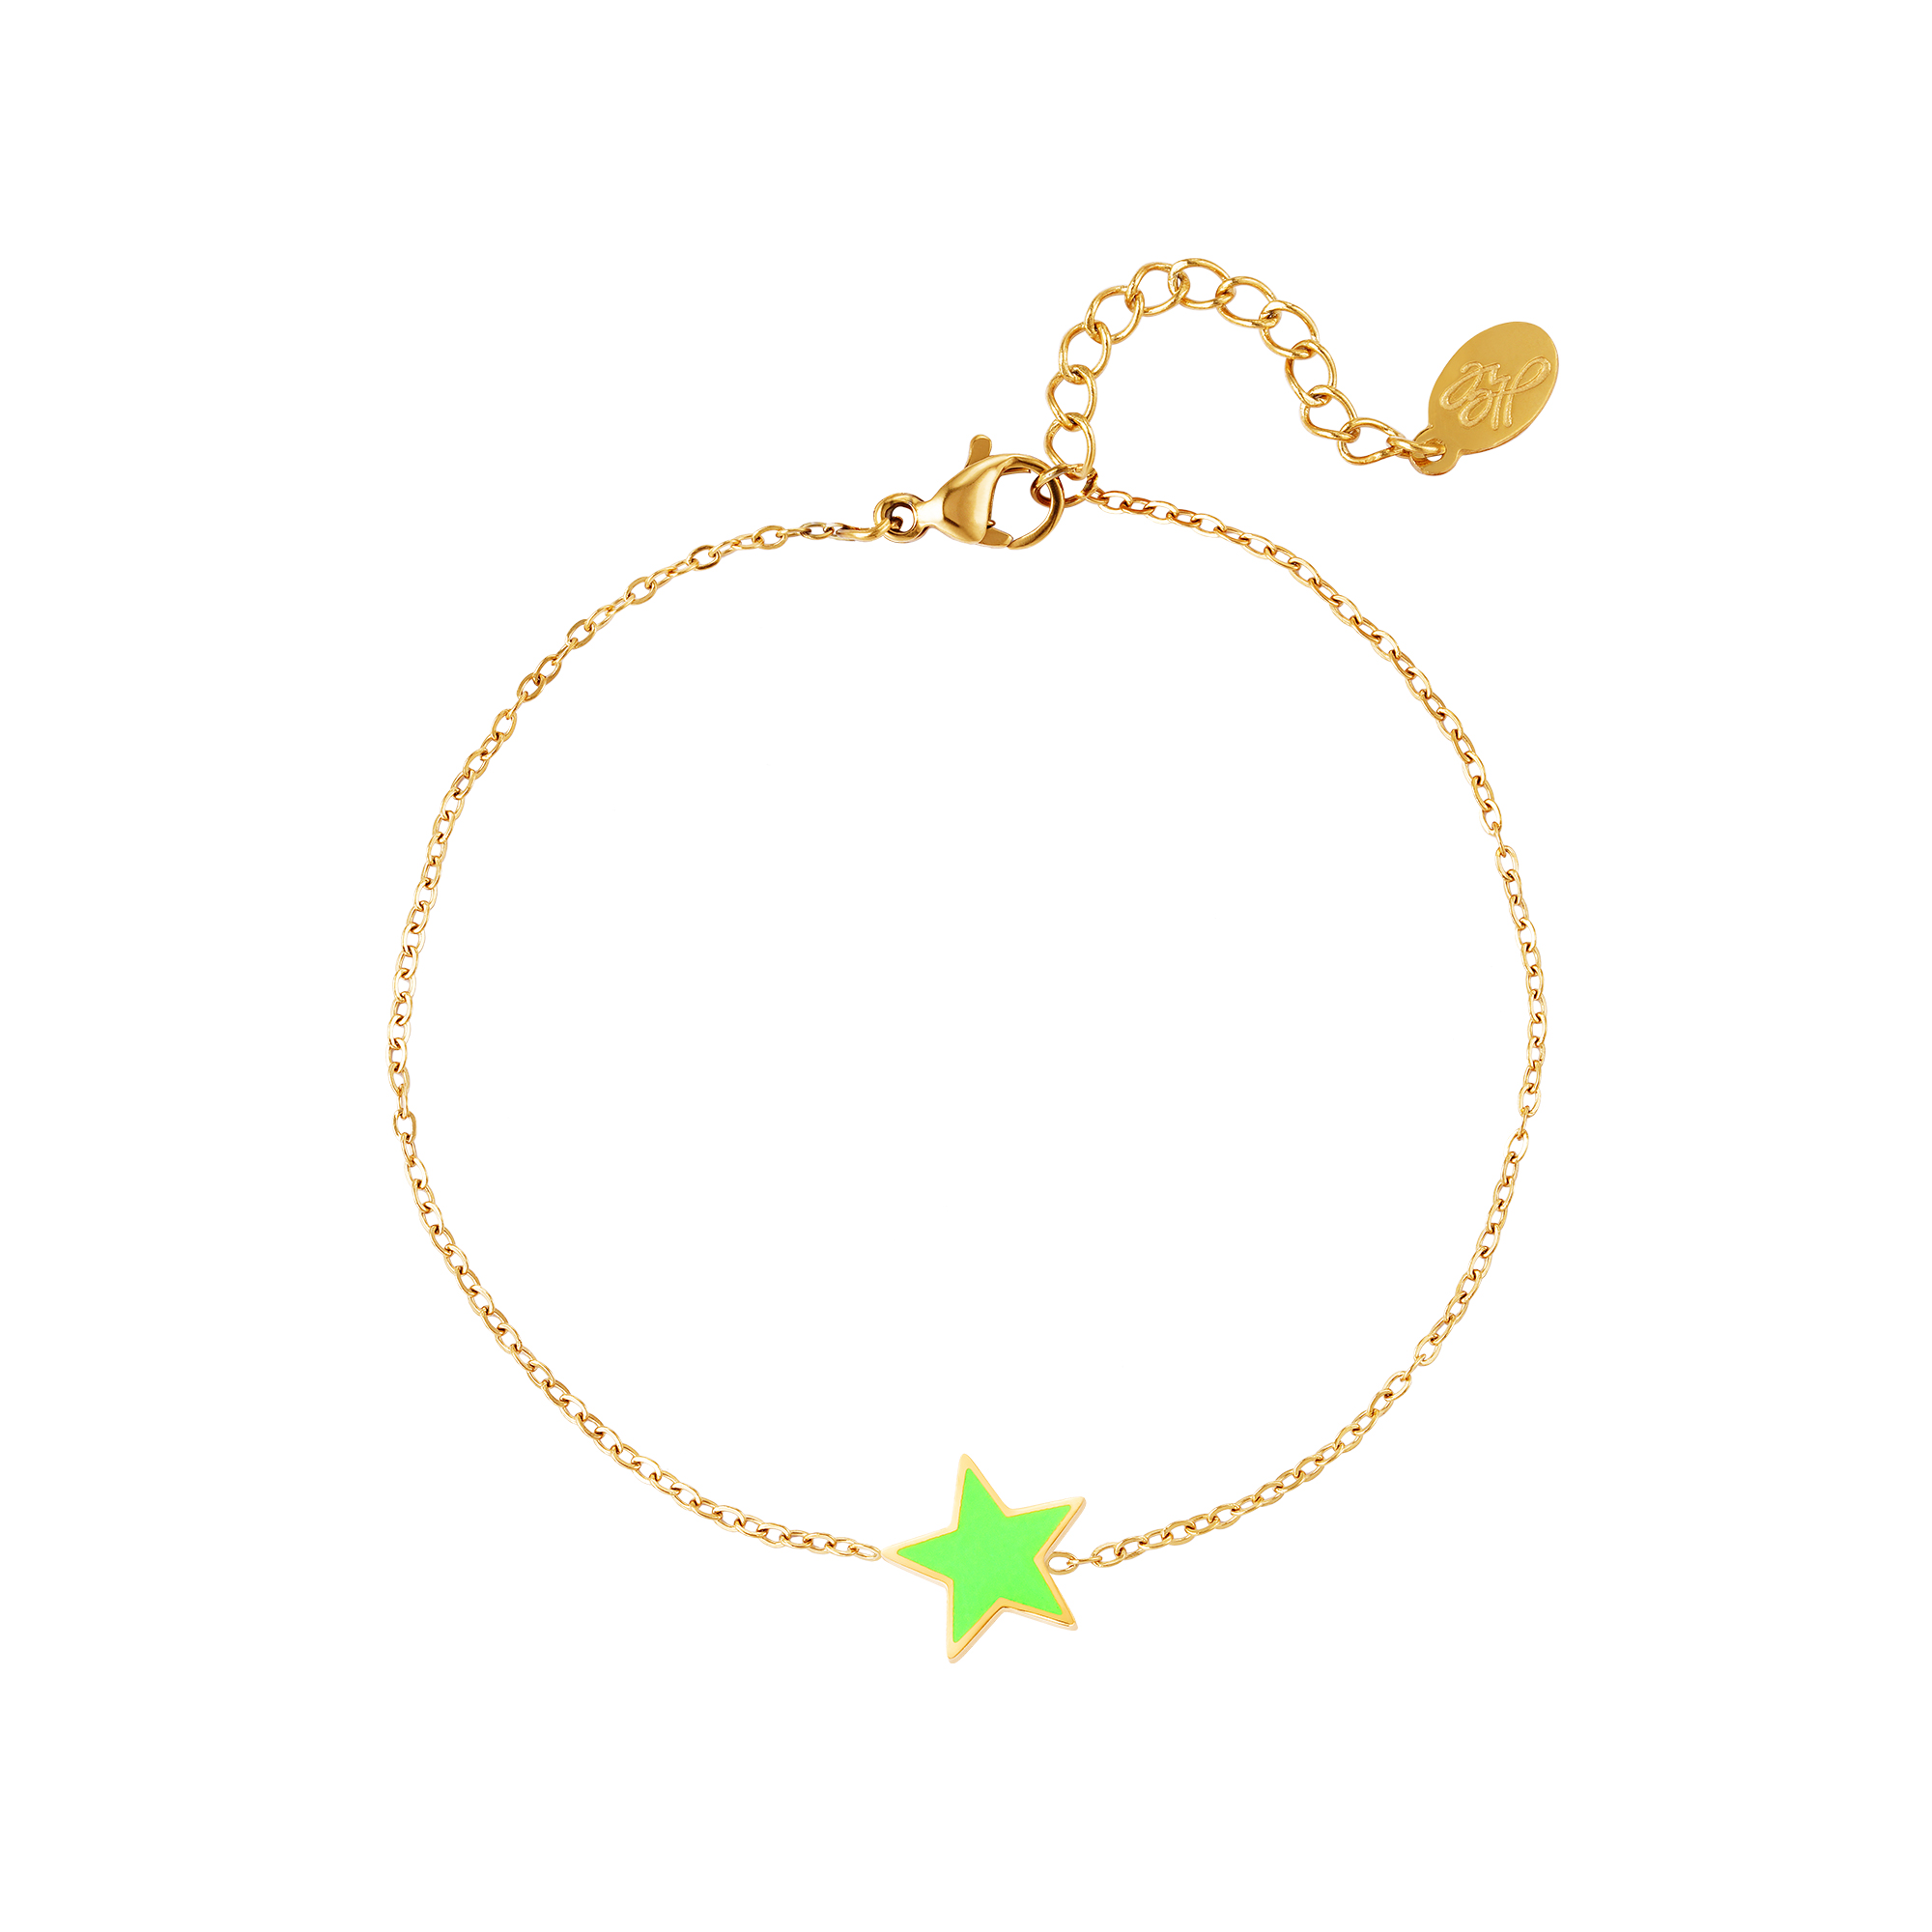 Stainless steel bracelet star